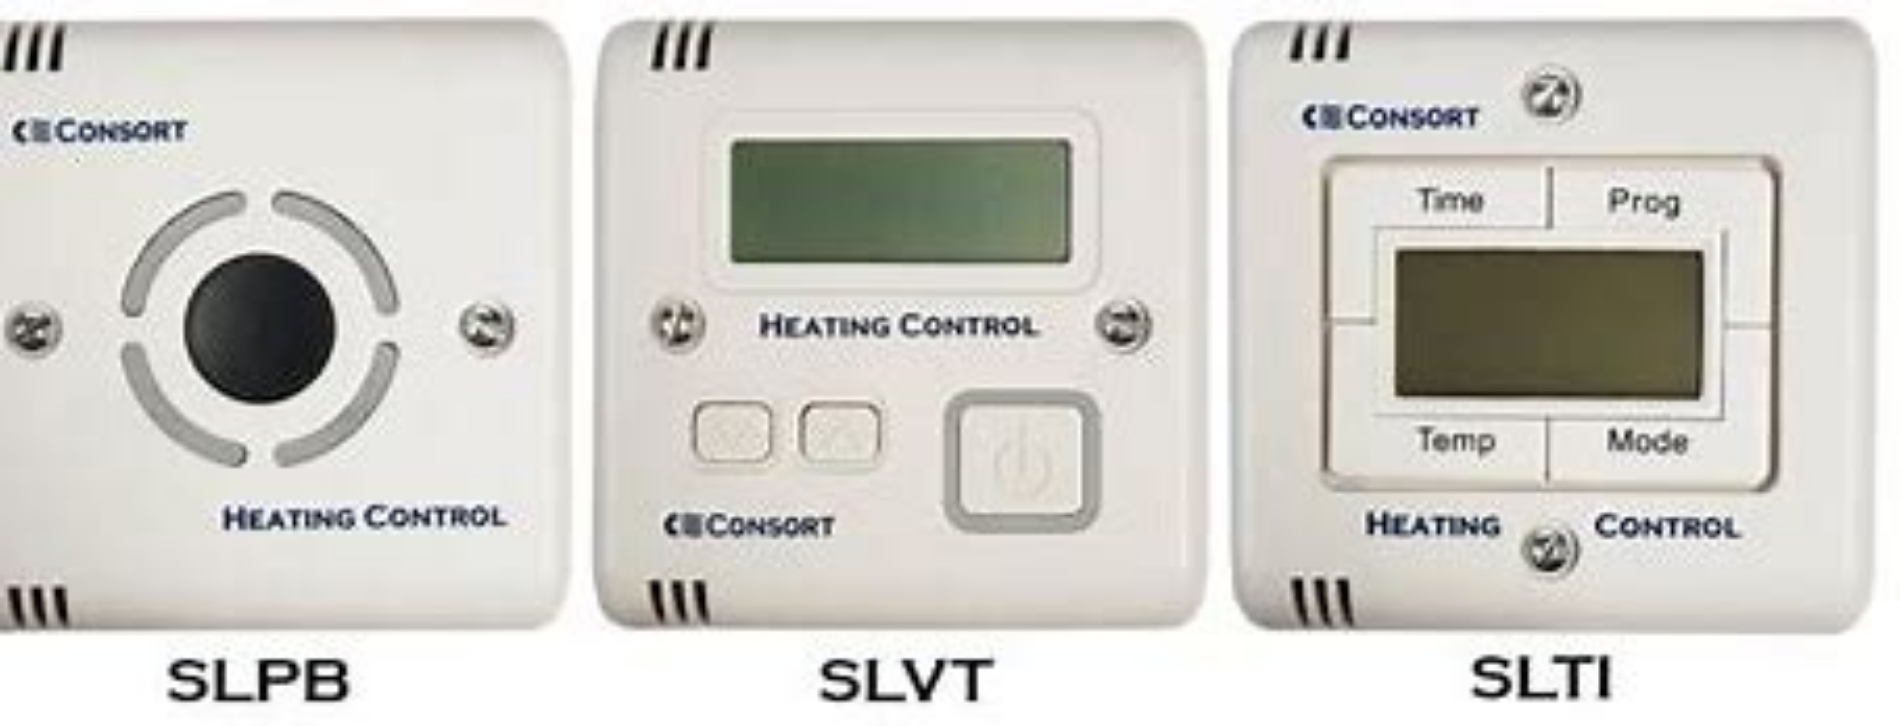 Consort Claudgen - SL Controllers